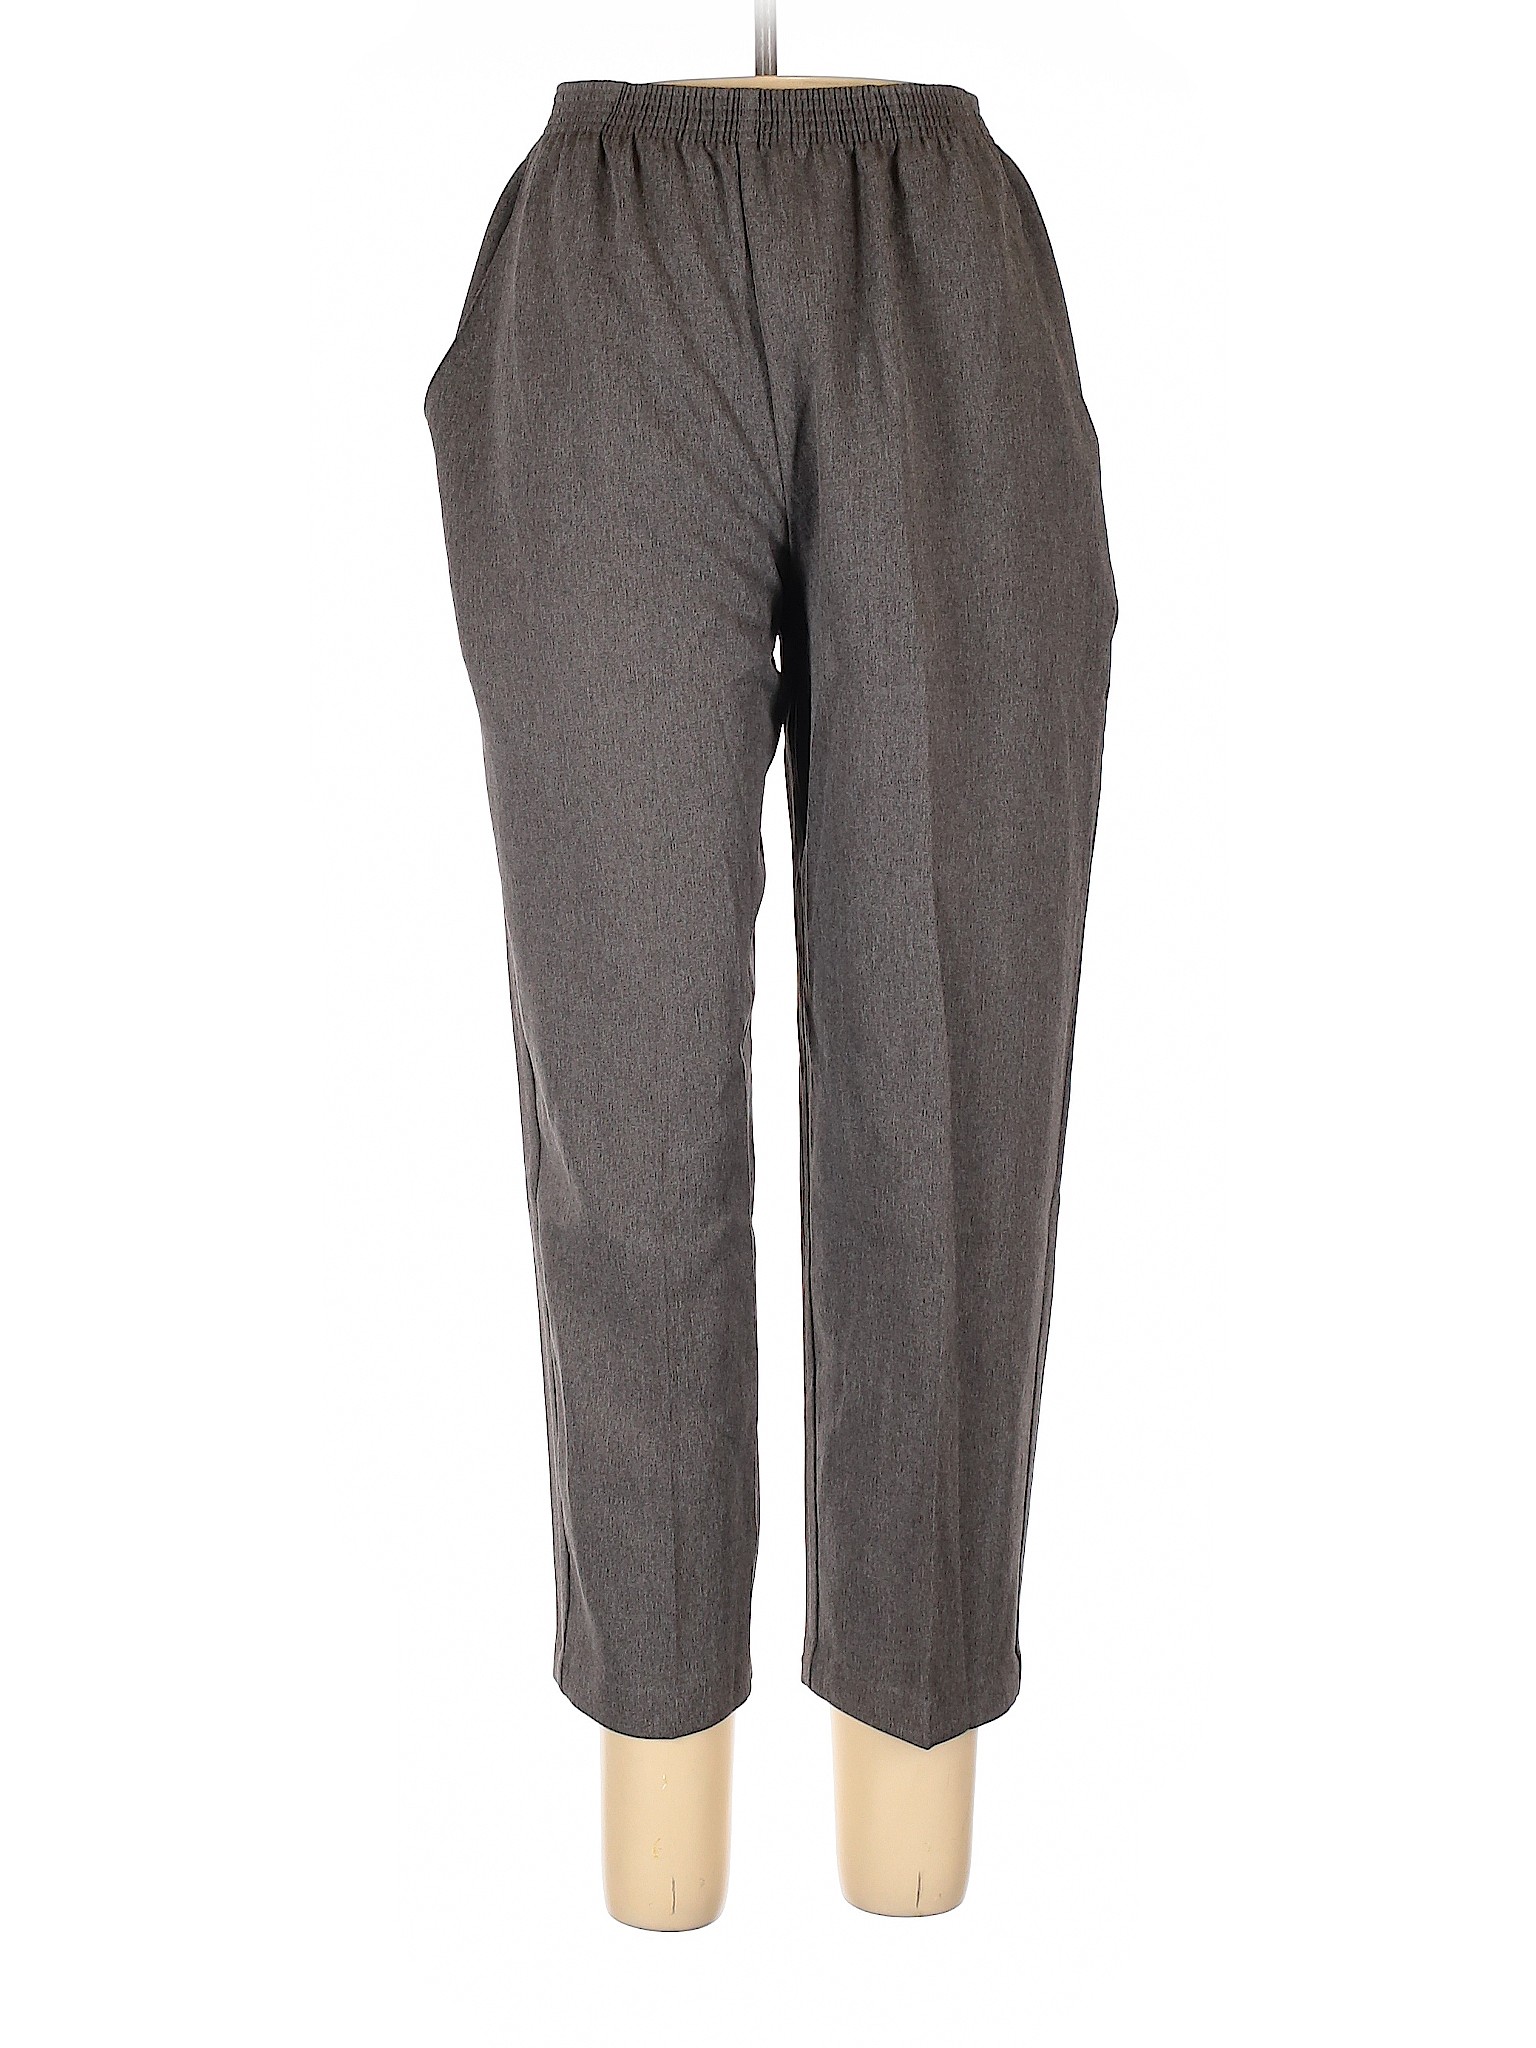 Briggs Women Gray Casual Pants 12 Petites | eBay